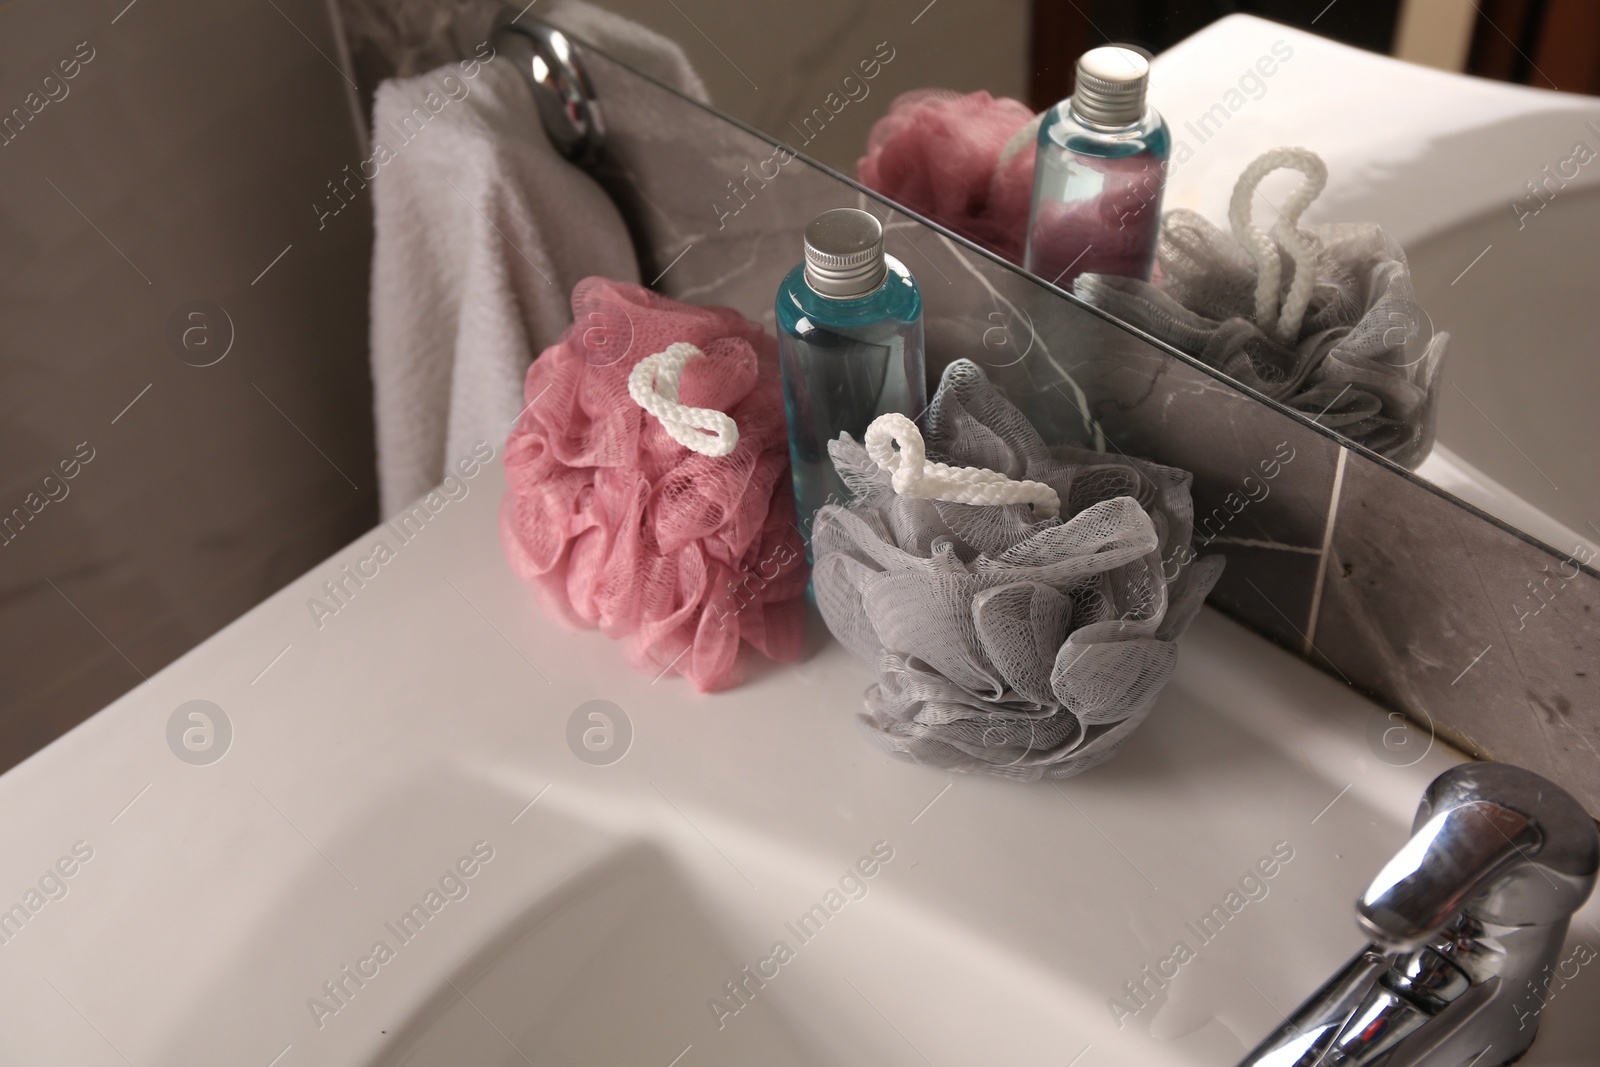 Photo of Colorful sponges between shower gel bottle on sink in bathroom